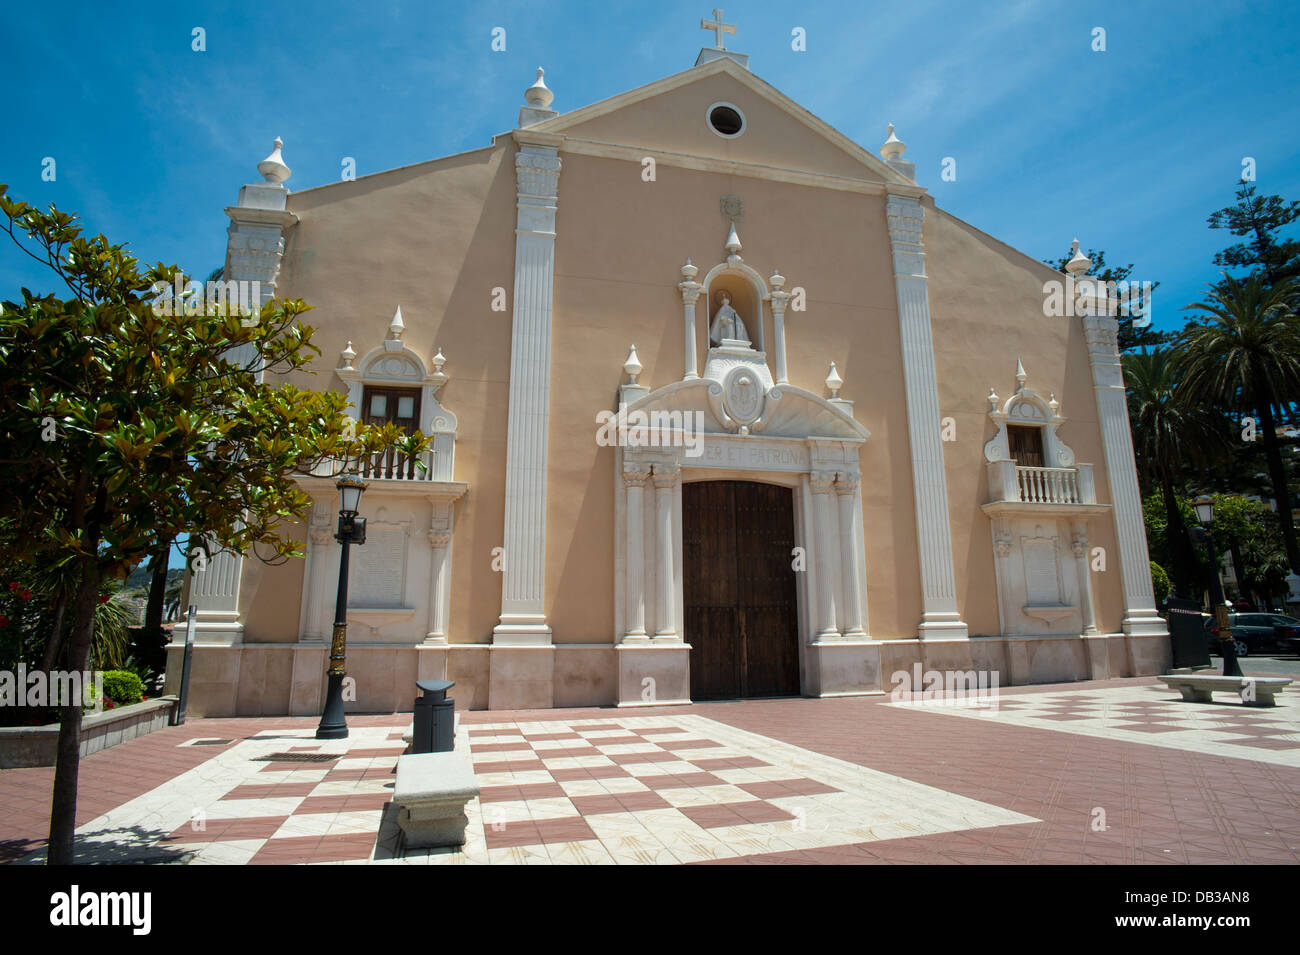 Santuario de Nuestra Señora de Africa. Ceuta. Spanien. Stockfoto